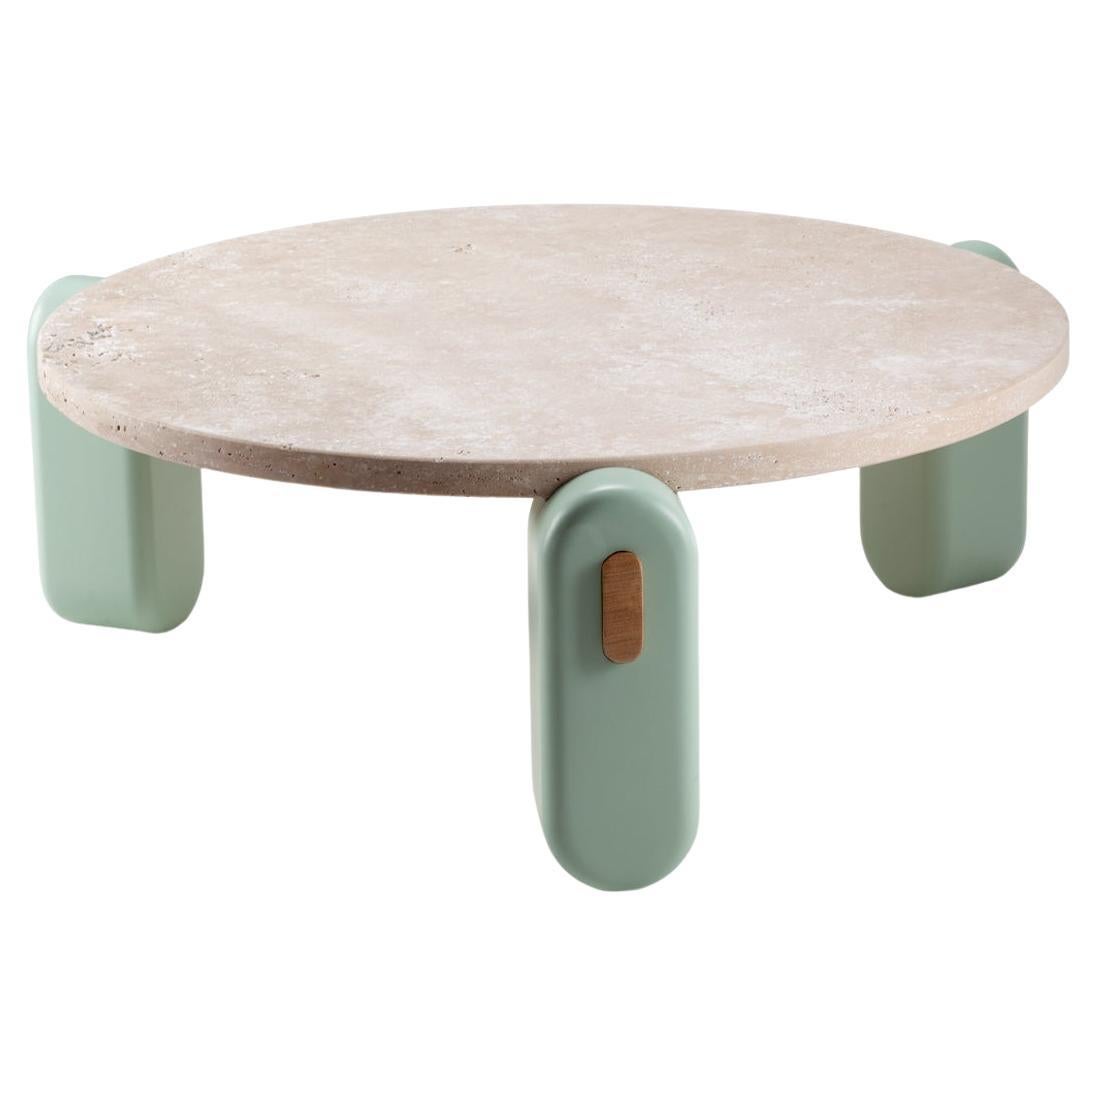 Table centrale Mona avec plateau en travertin, pieds laqués en jade et structure en bois